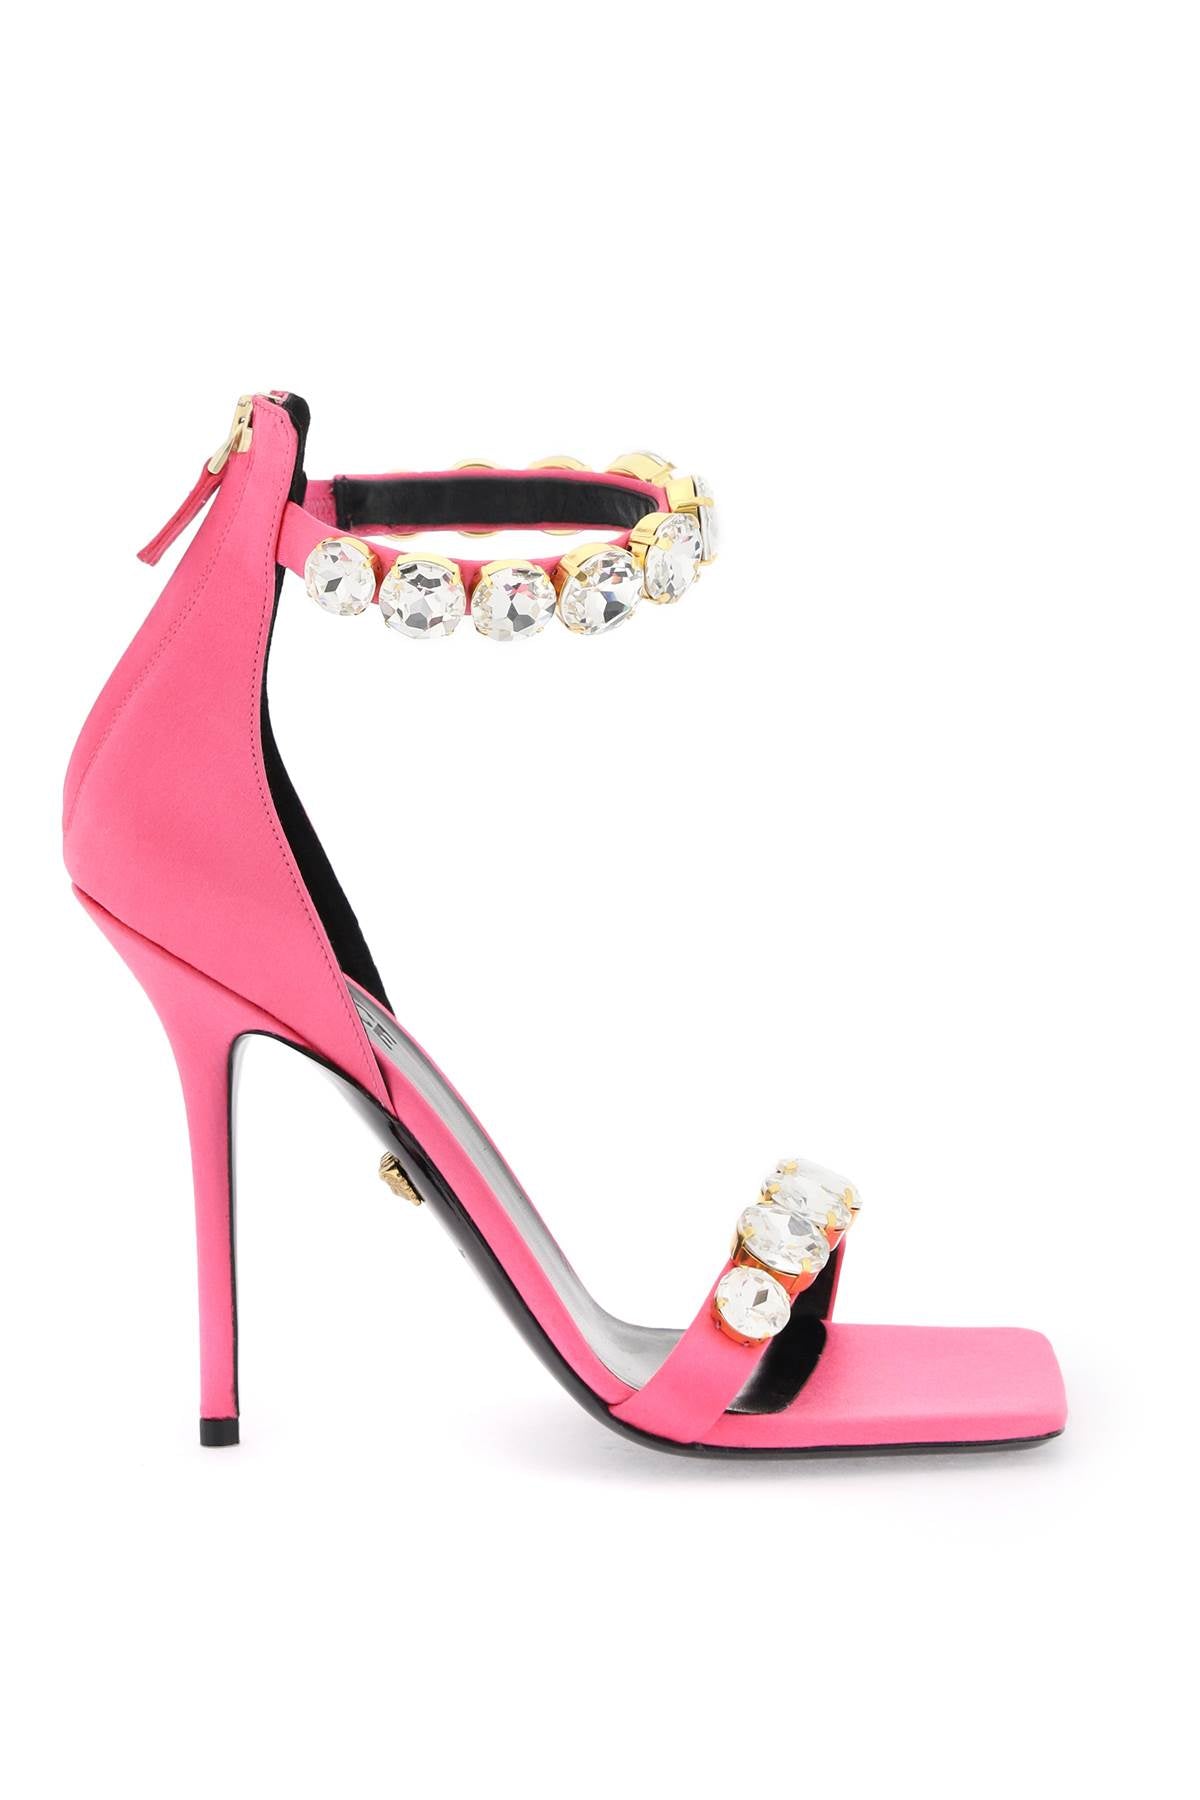 粉紅絲織半身鞋，加上水晶裝飾，適合女性